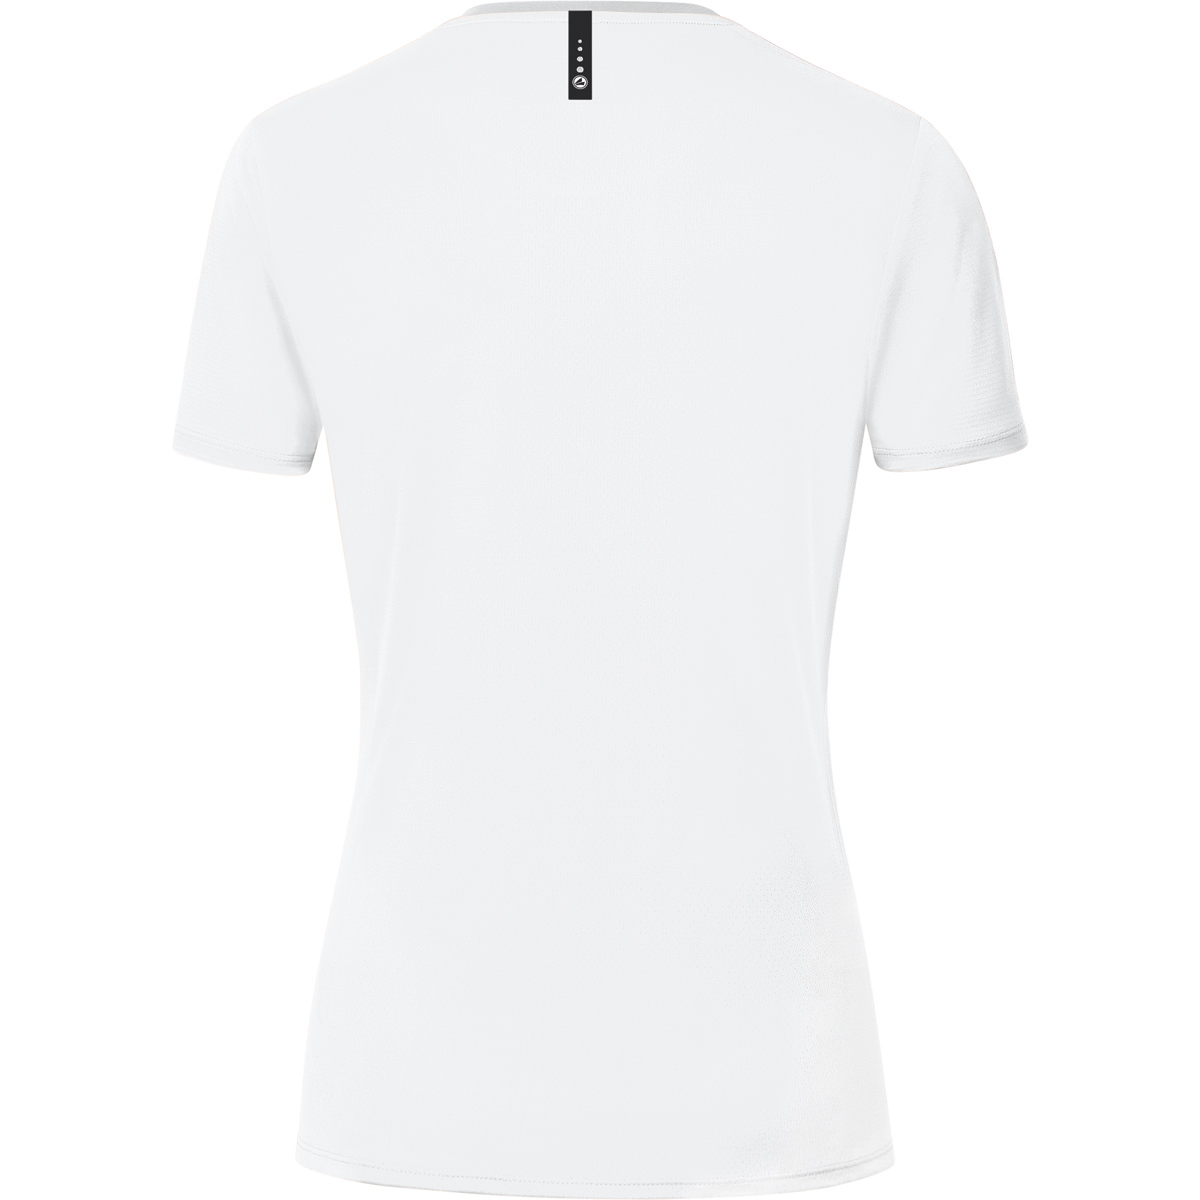 JAKO T-Shirt Champ 2.0 weiß, Damen, Gr. 6120 36